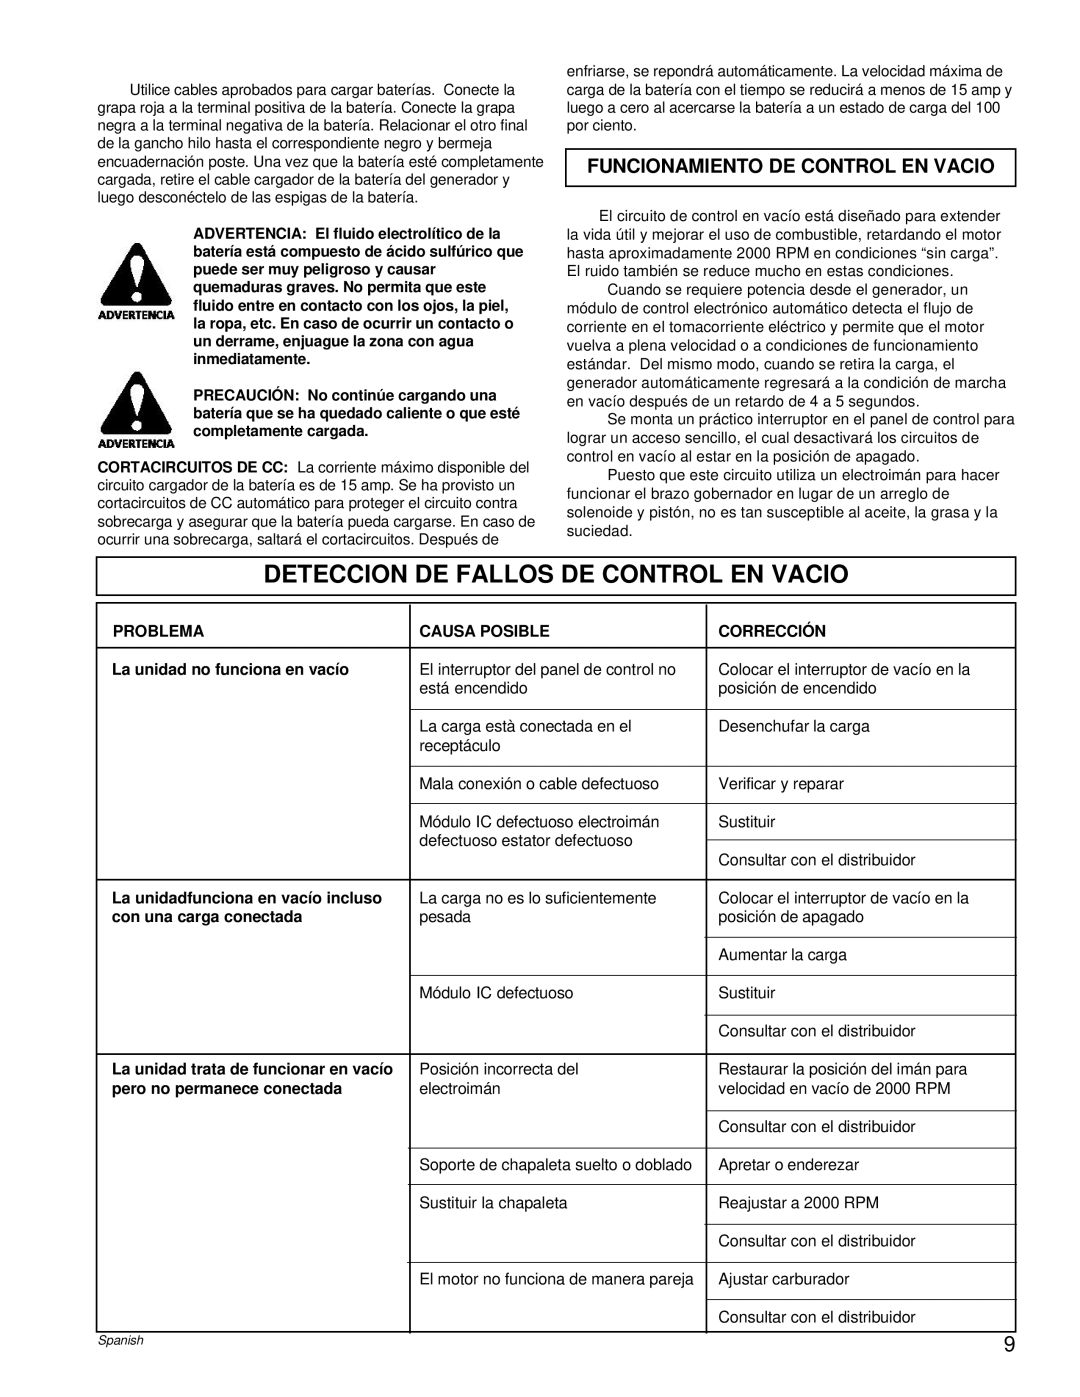 Powermate PC0496503.17 manual Deteccion De Fallos De Control En Vacio, Funcionamiento De Control En Vacio 